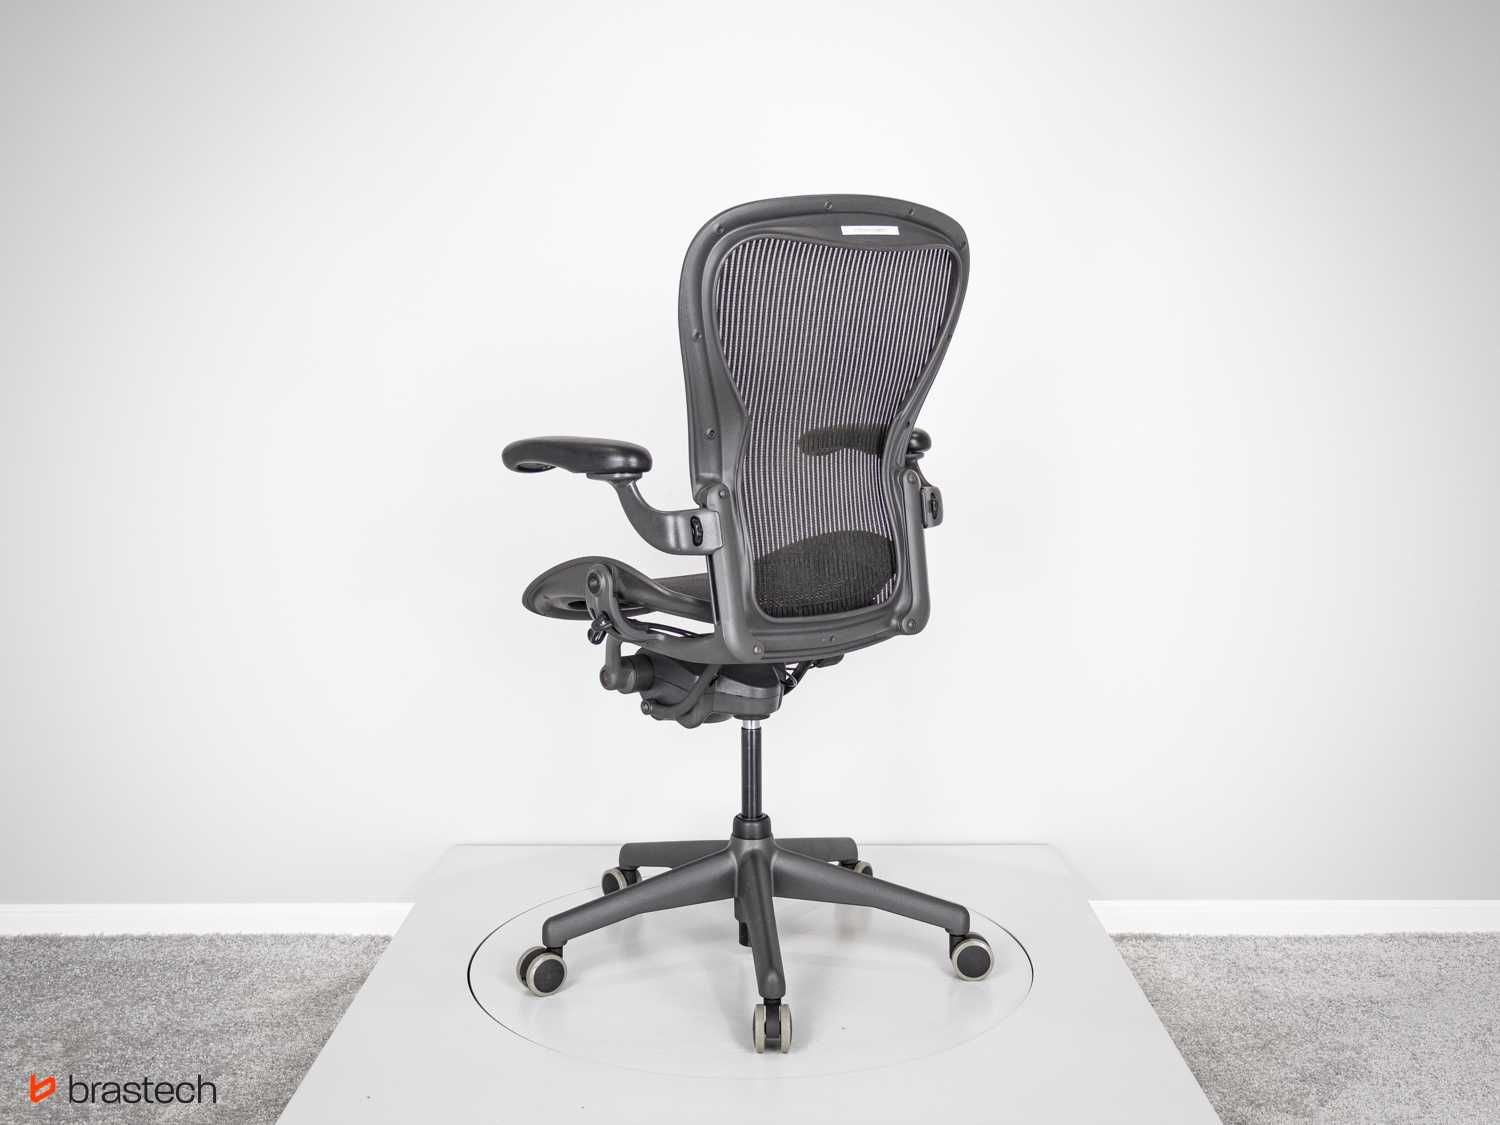 Krzesło biurowe Herman Miller Aeron Classic rozmiar C odnowiony